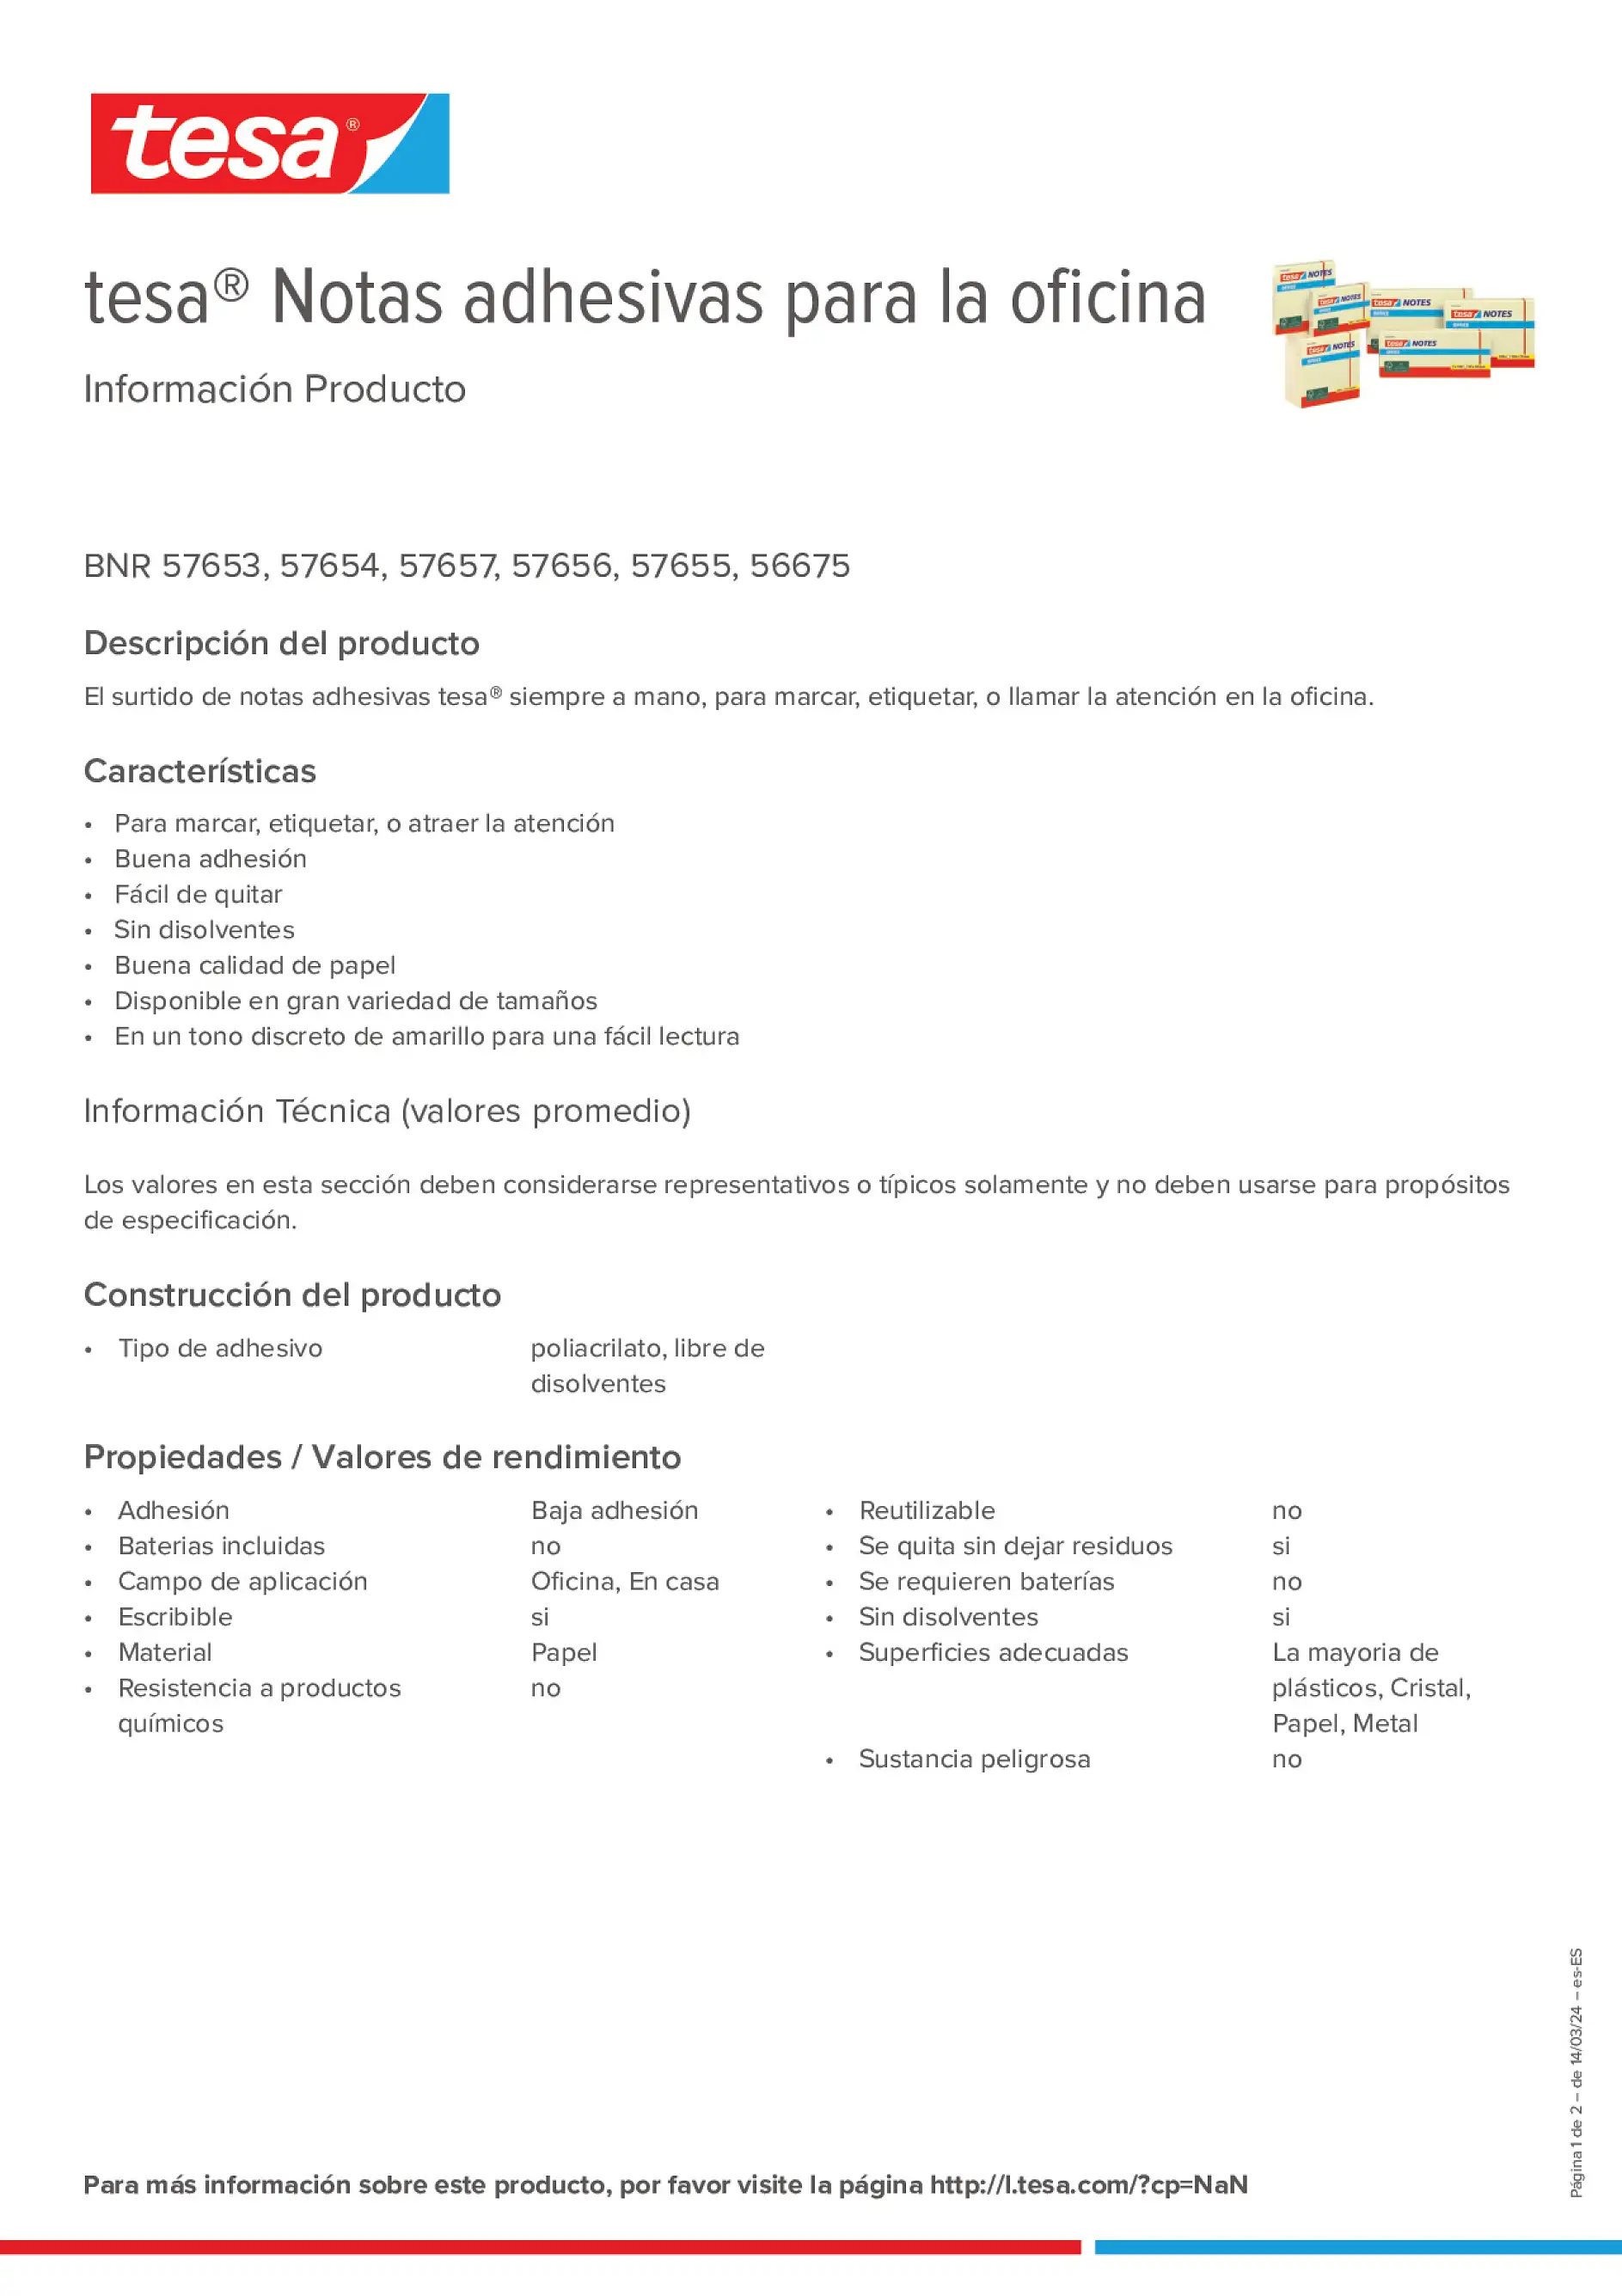 Product information_tesa® 57655_es-ES